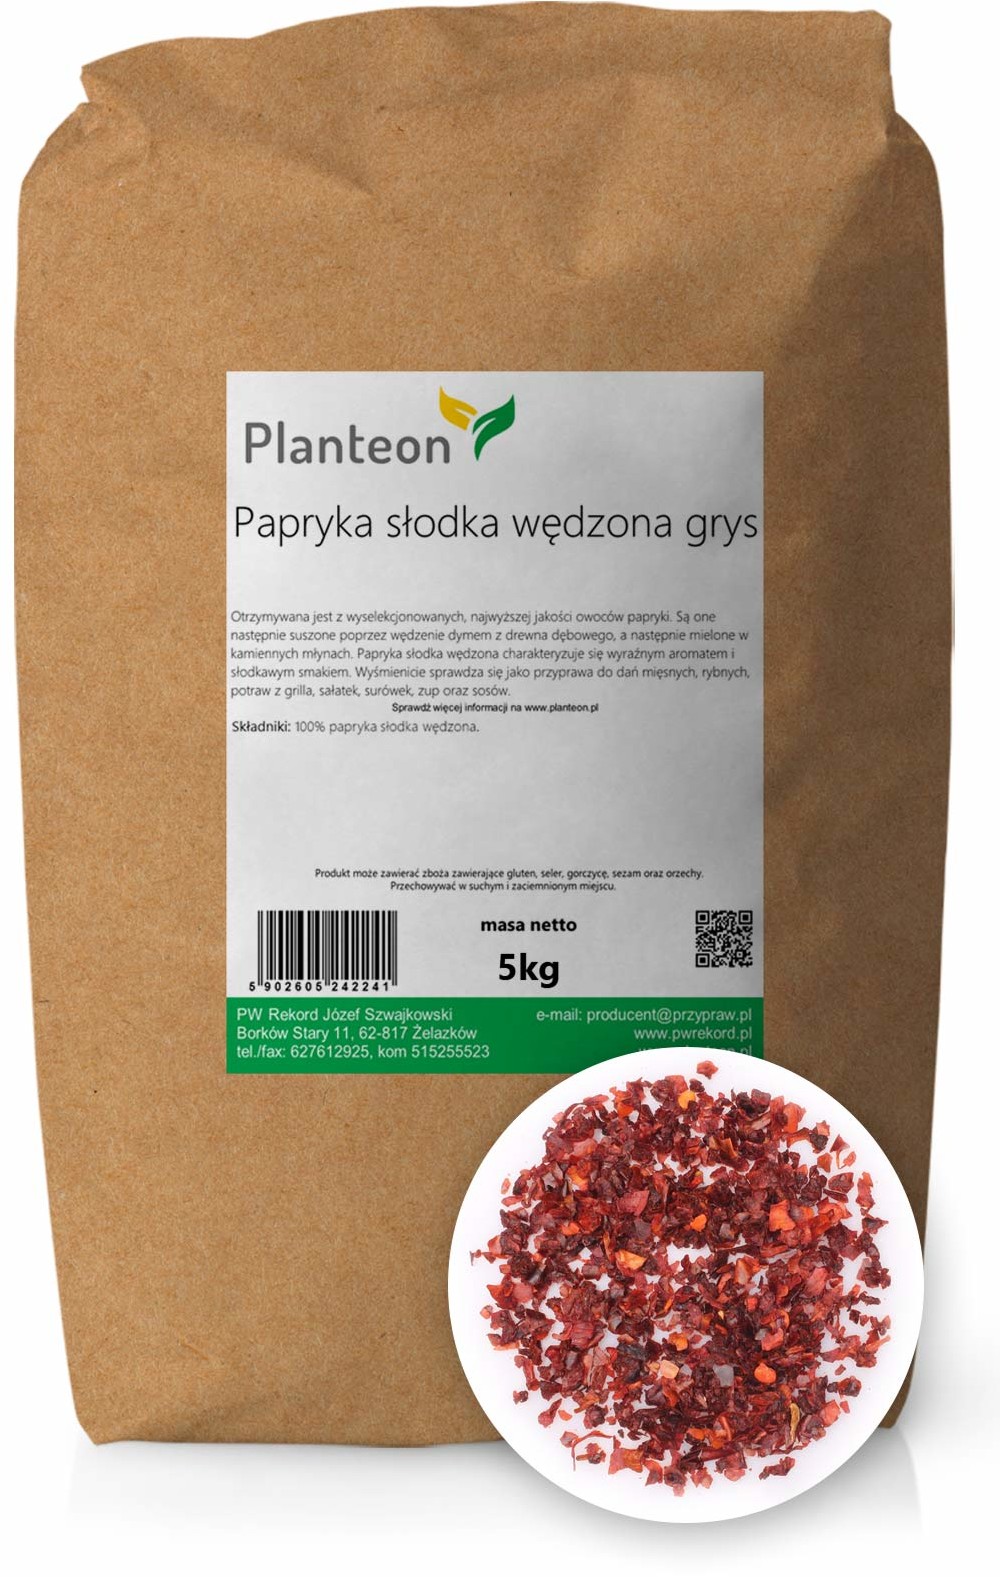 Planteon Papryka słodka wędzona grys 5kg 2-0032-36-6